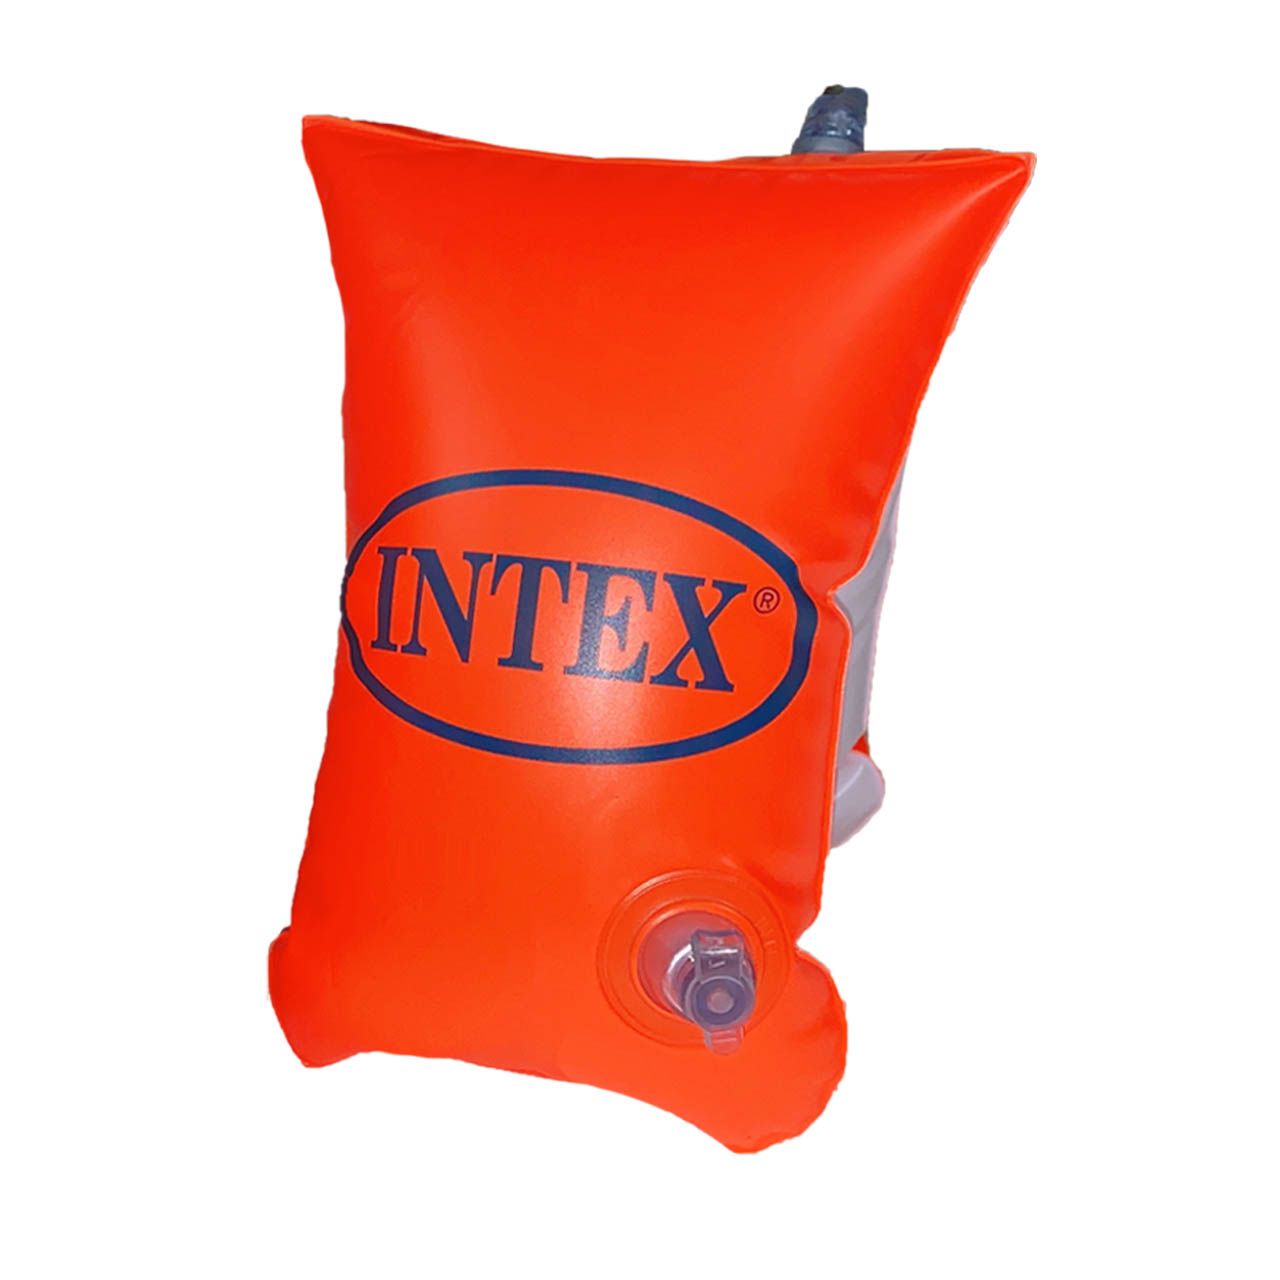 بازوبند شنا بادی اینتکس  مدل INTEX6-12 بسته 2 عددی -  - 5